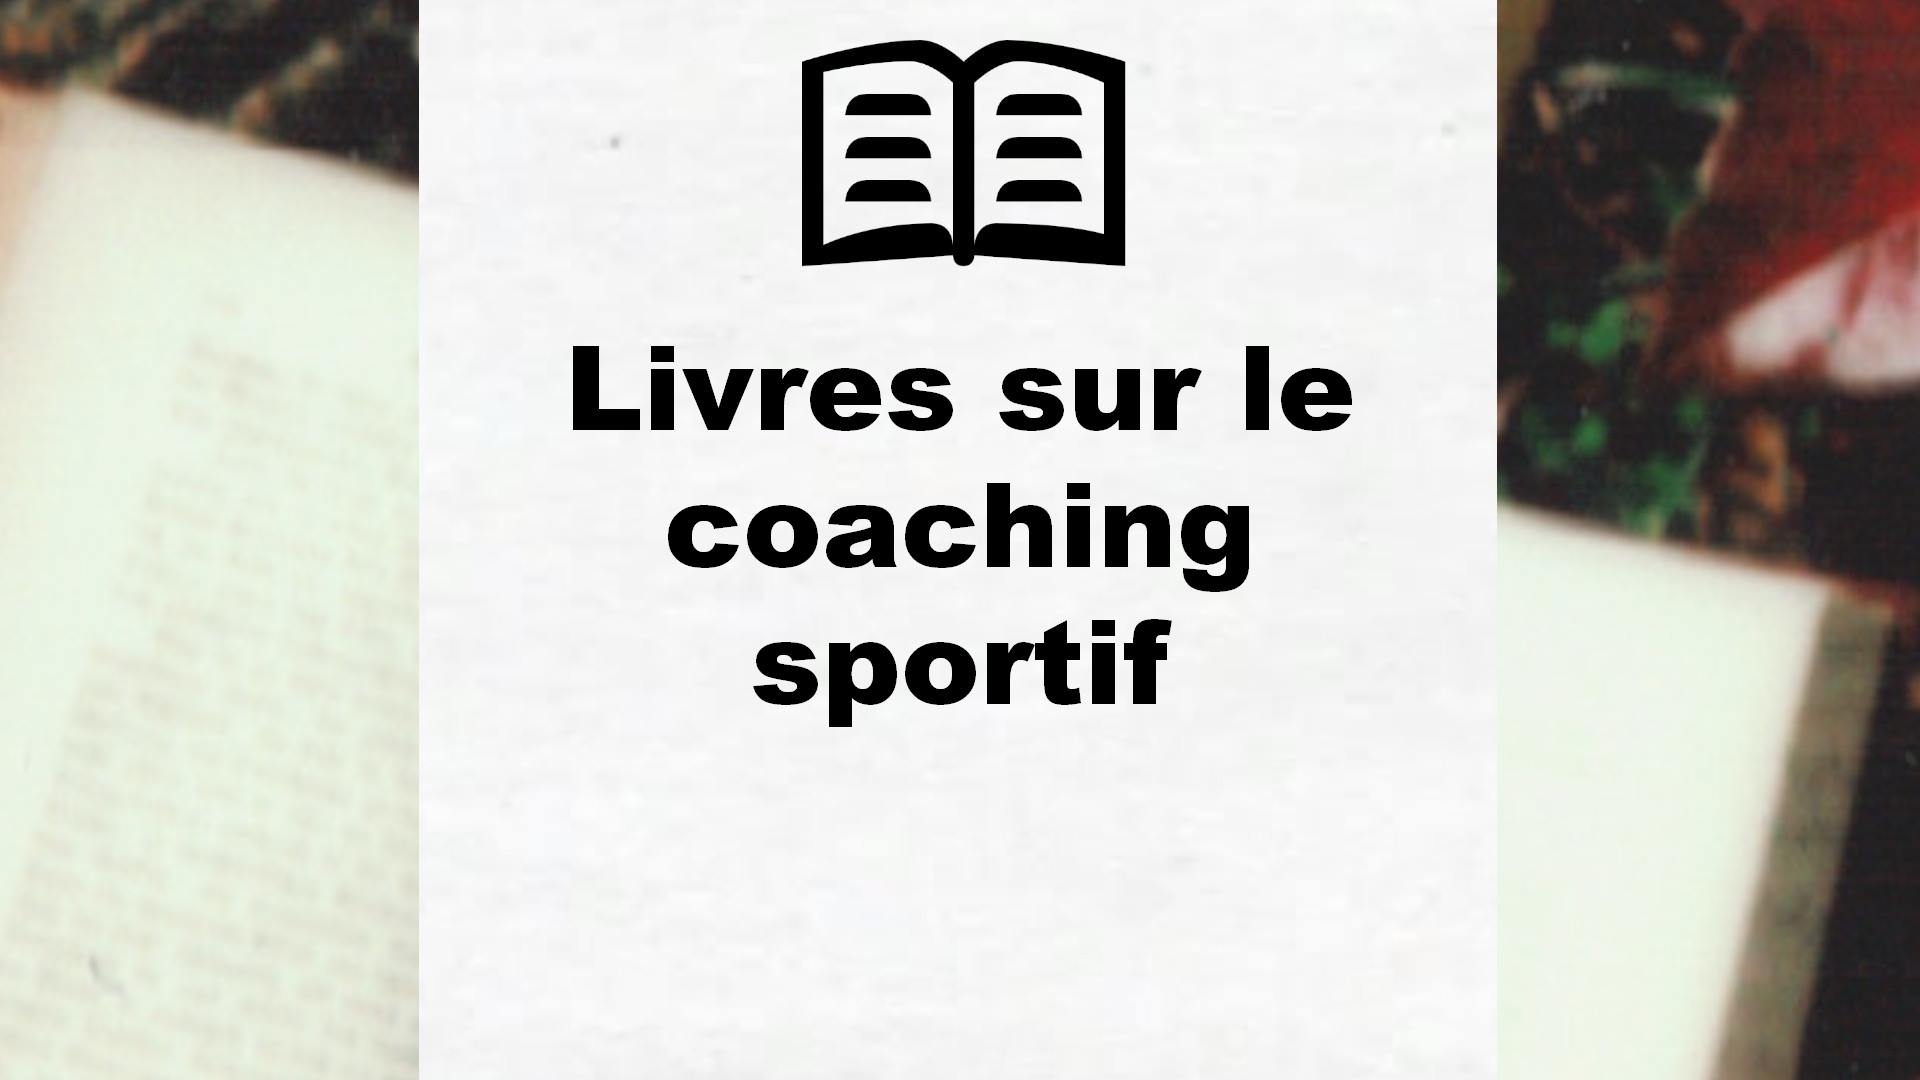 Livres sur le coaching sportif